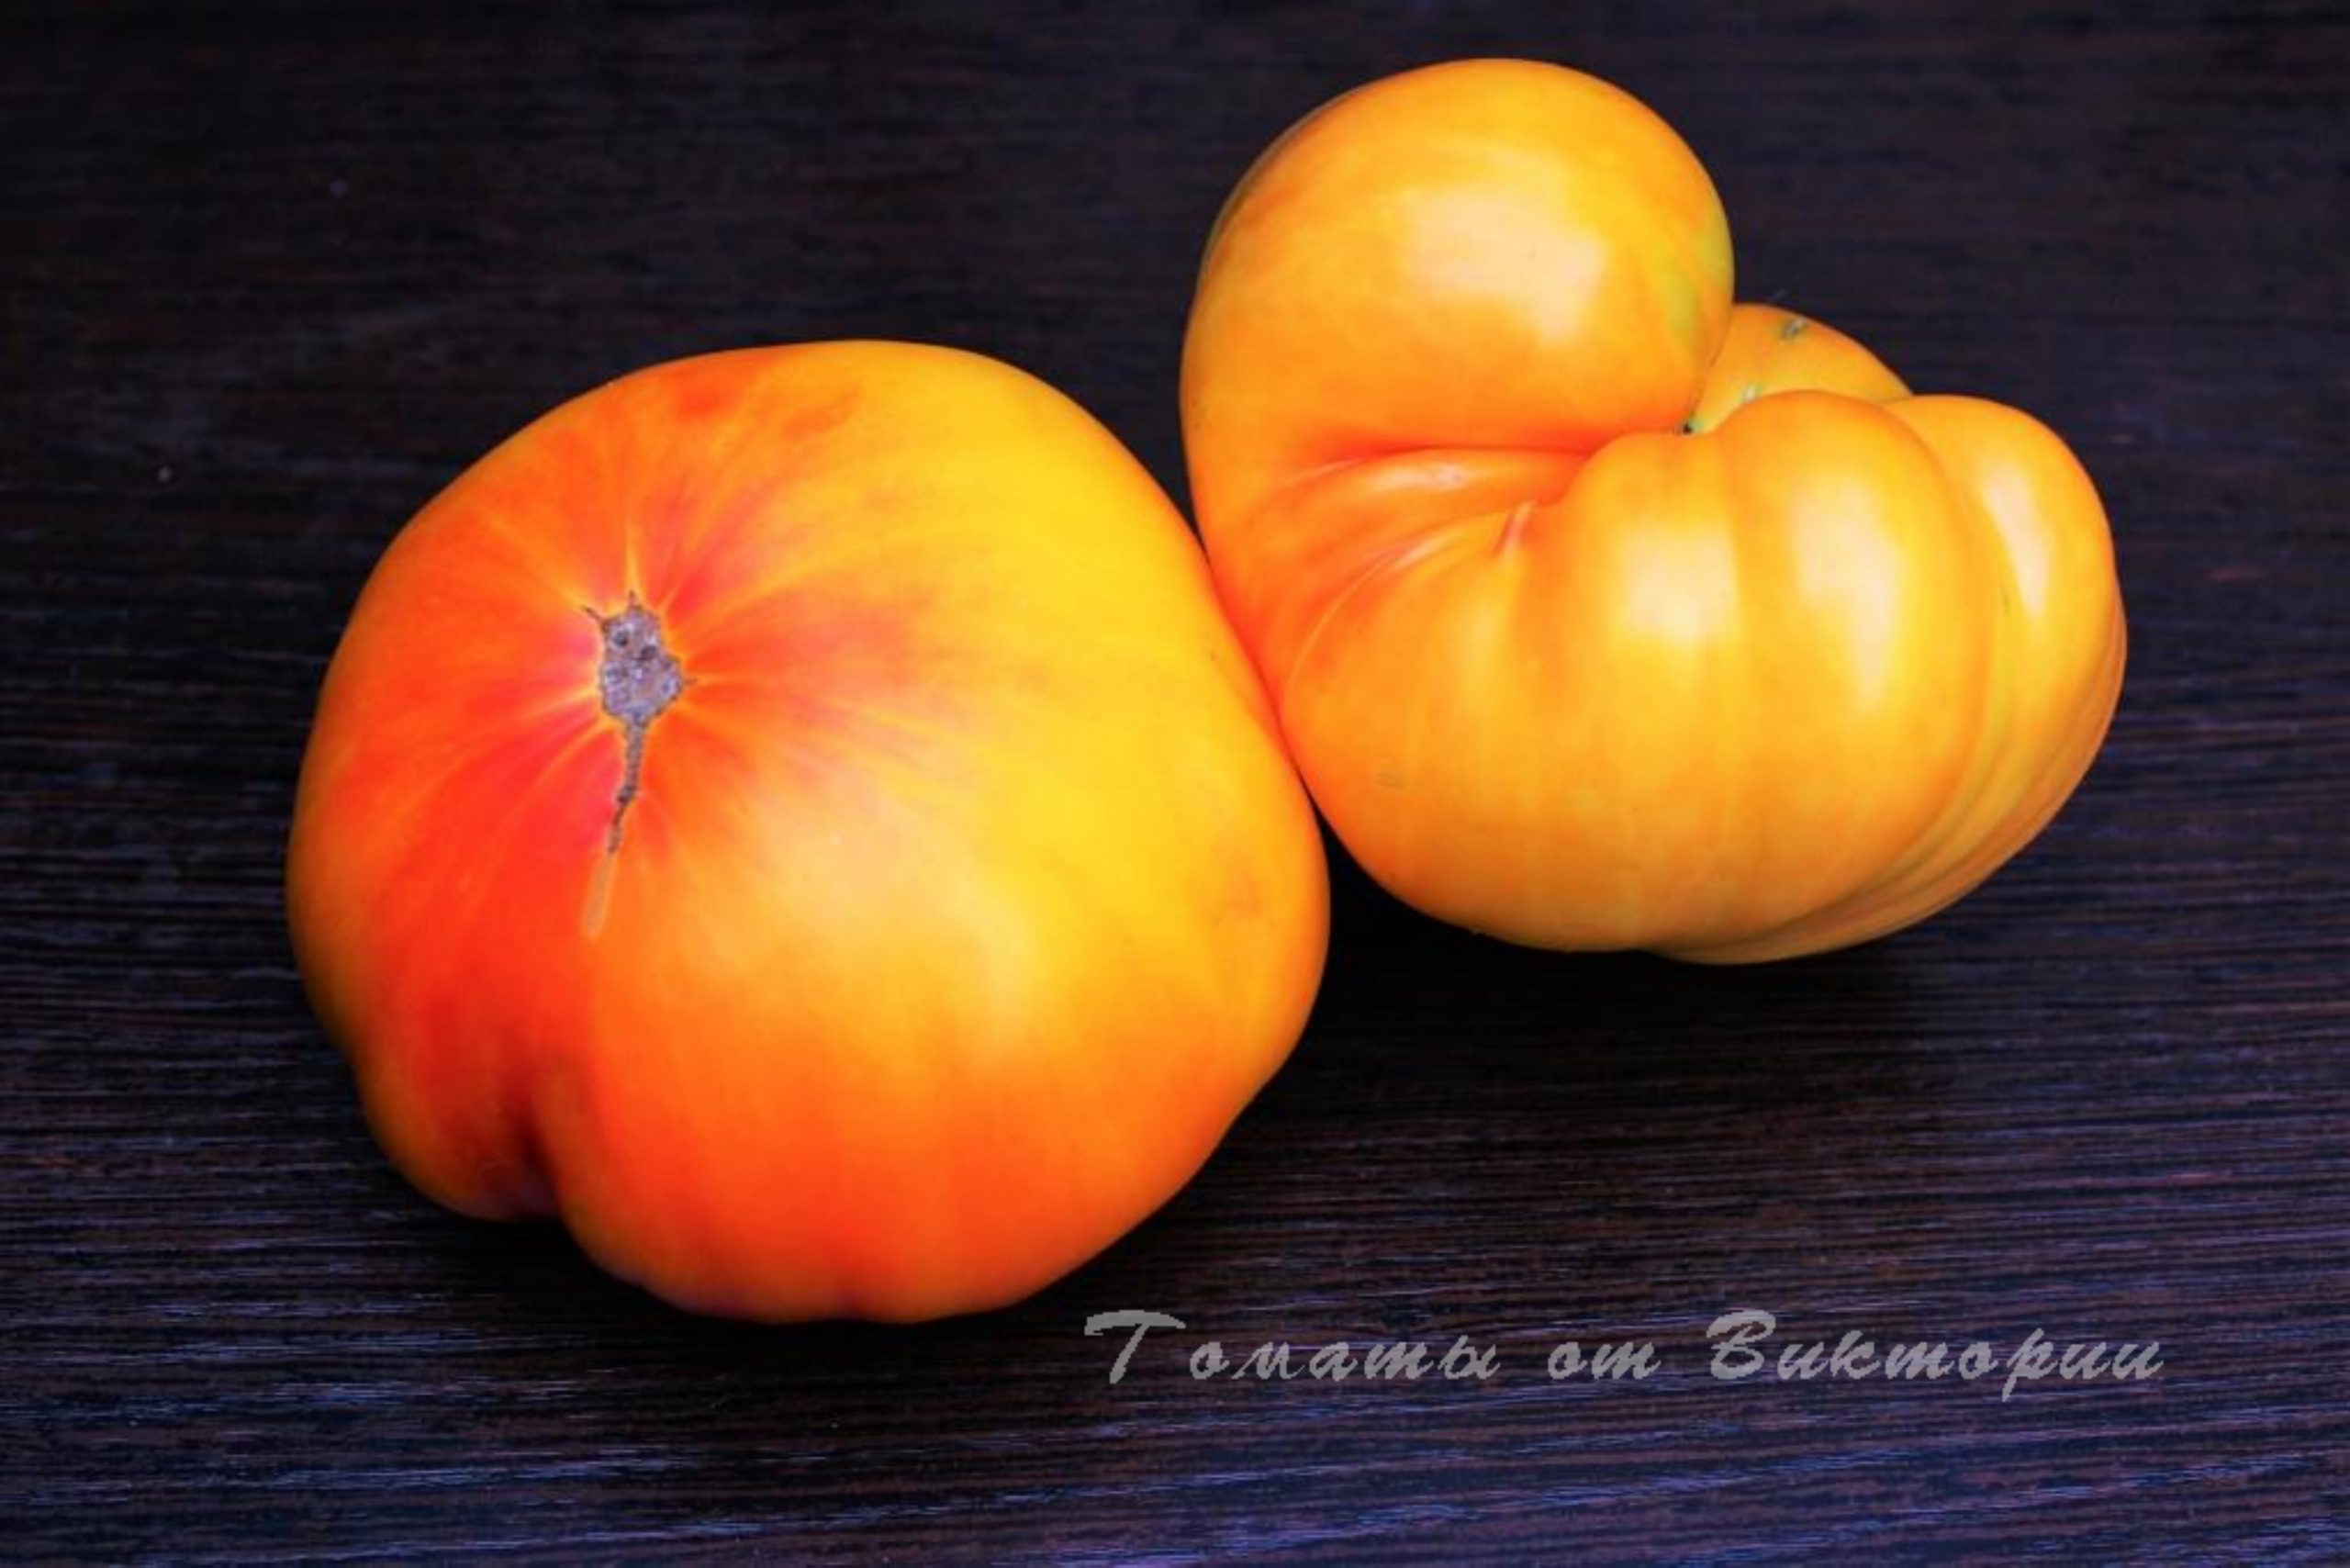 томат звезда техаса описание сорта фото отзывы